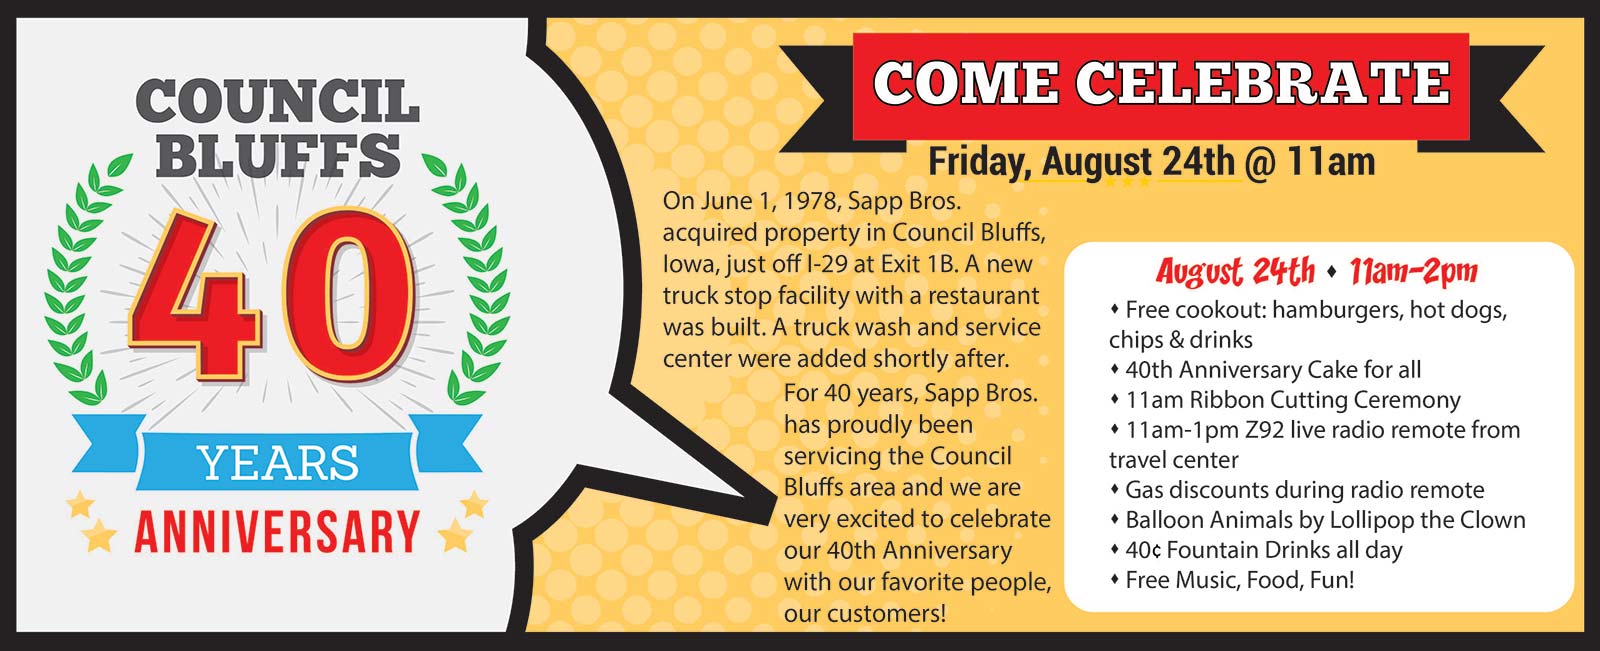 Council Bluffs 40 Years Anniversary Sapp Bros.